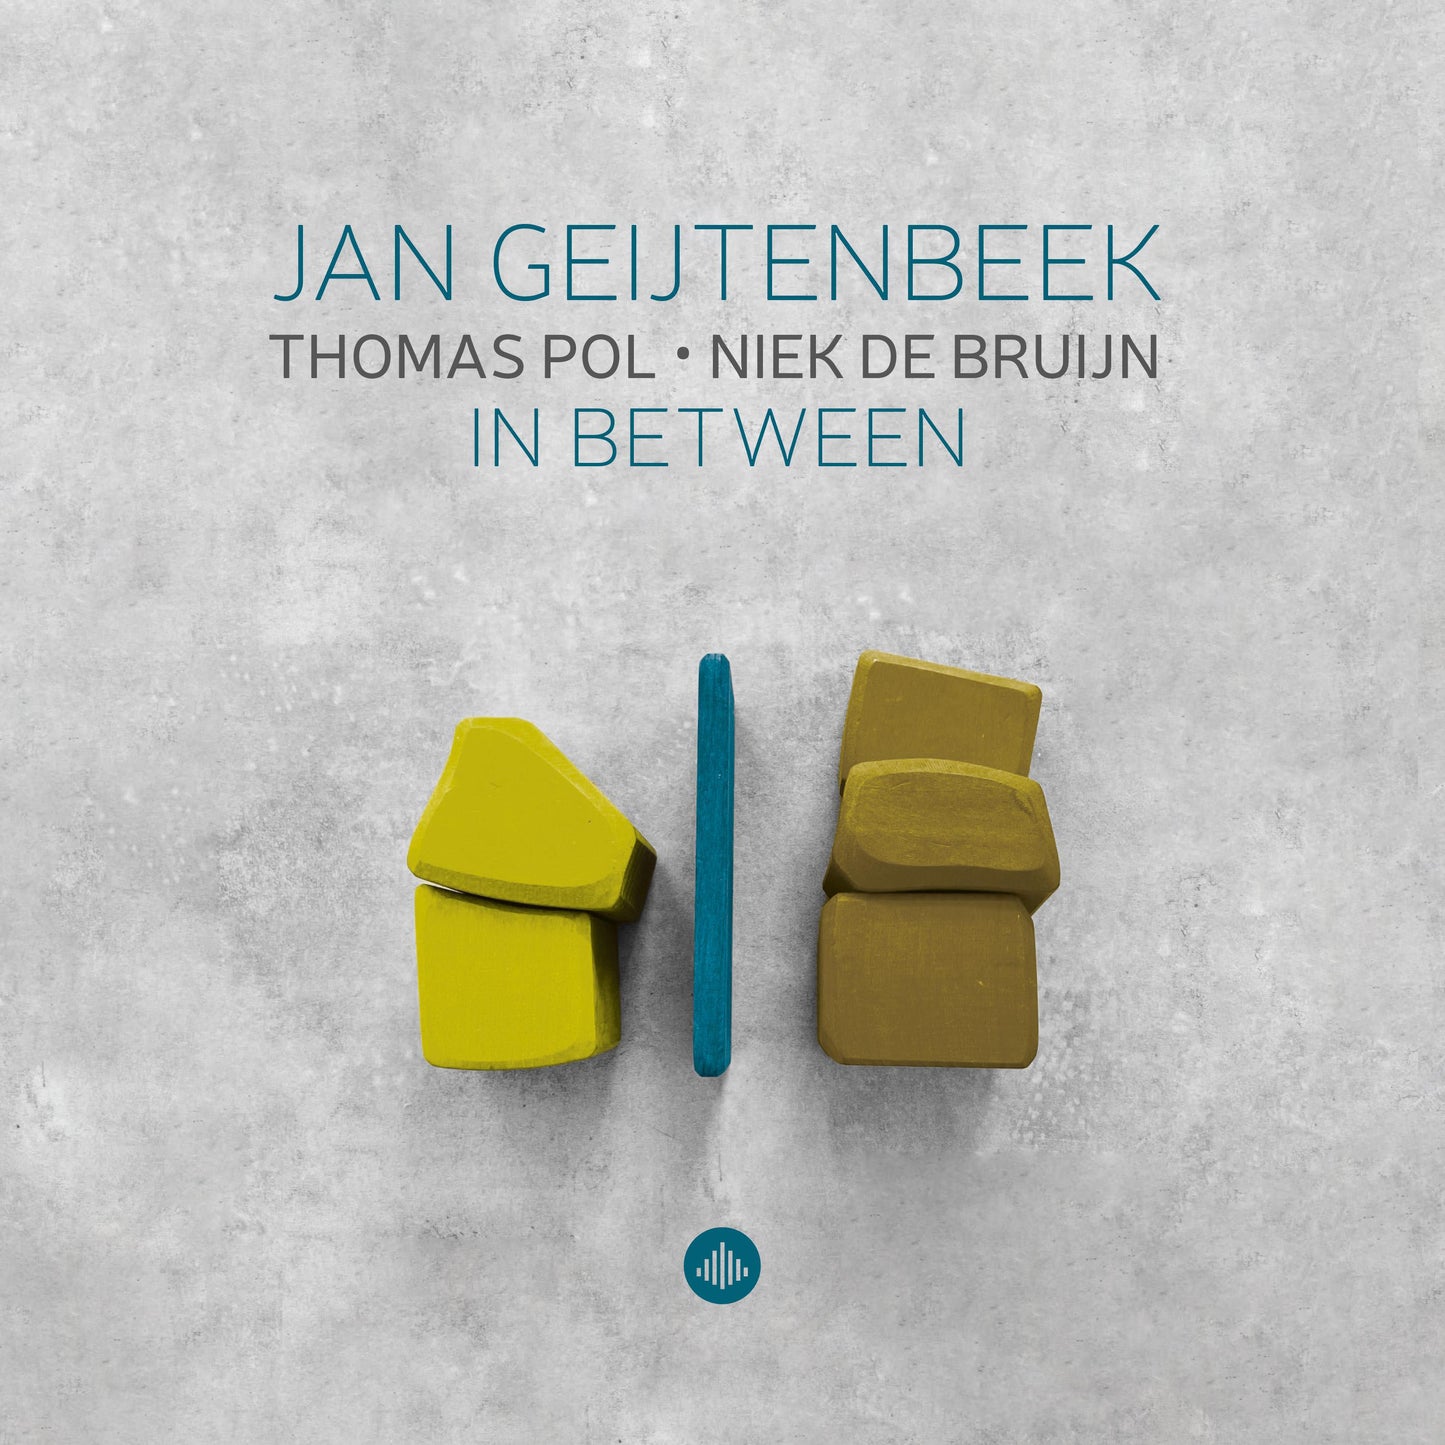 Geijtenbeek: In Between